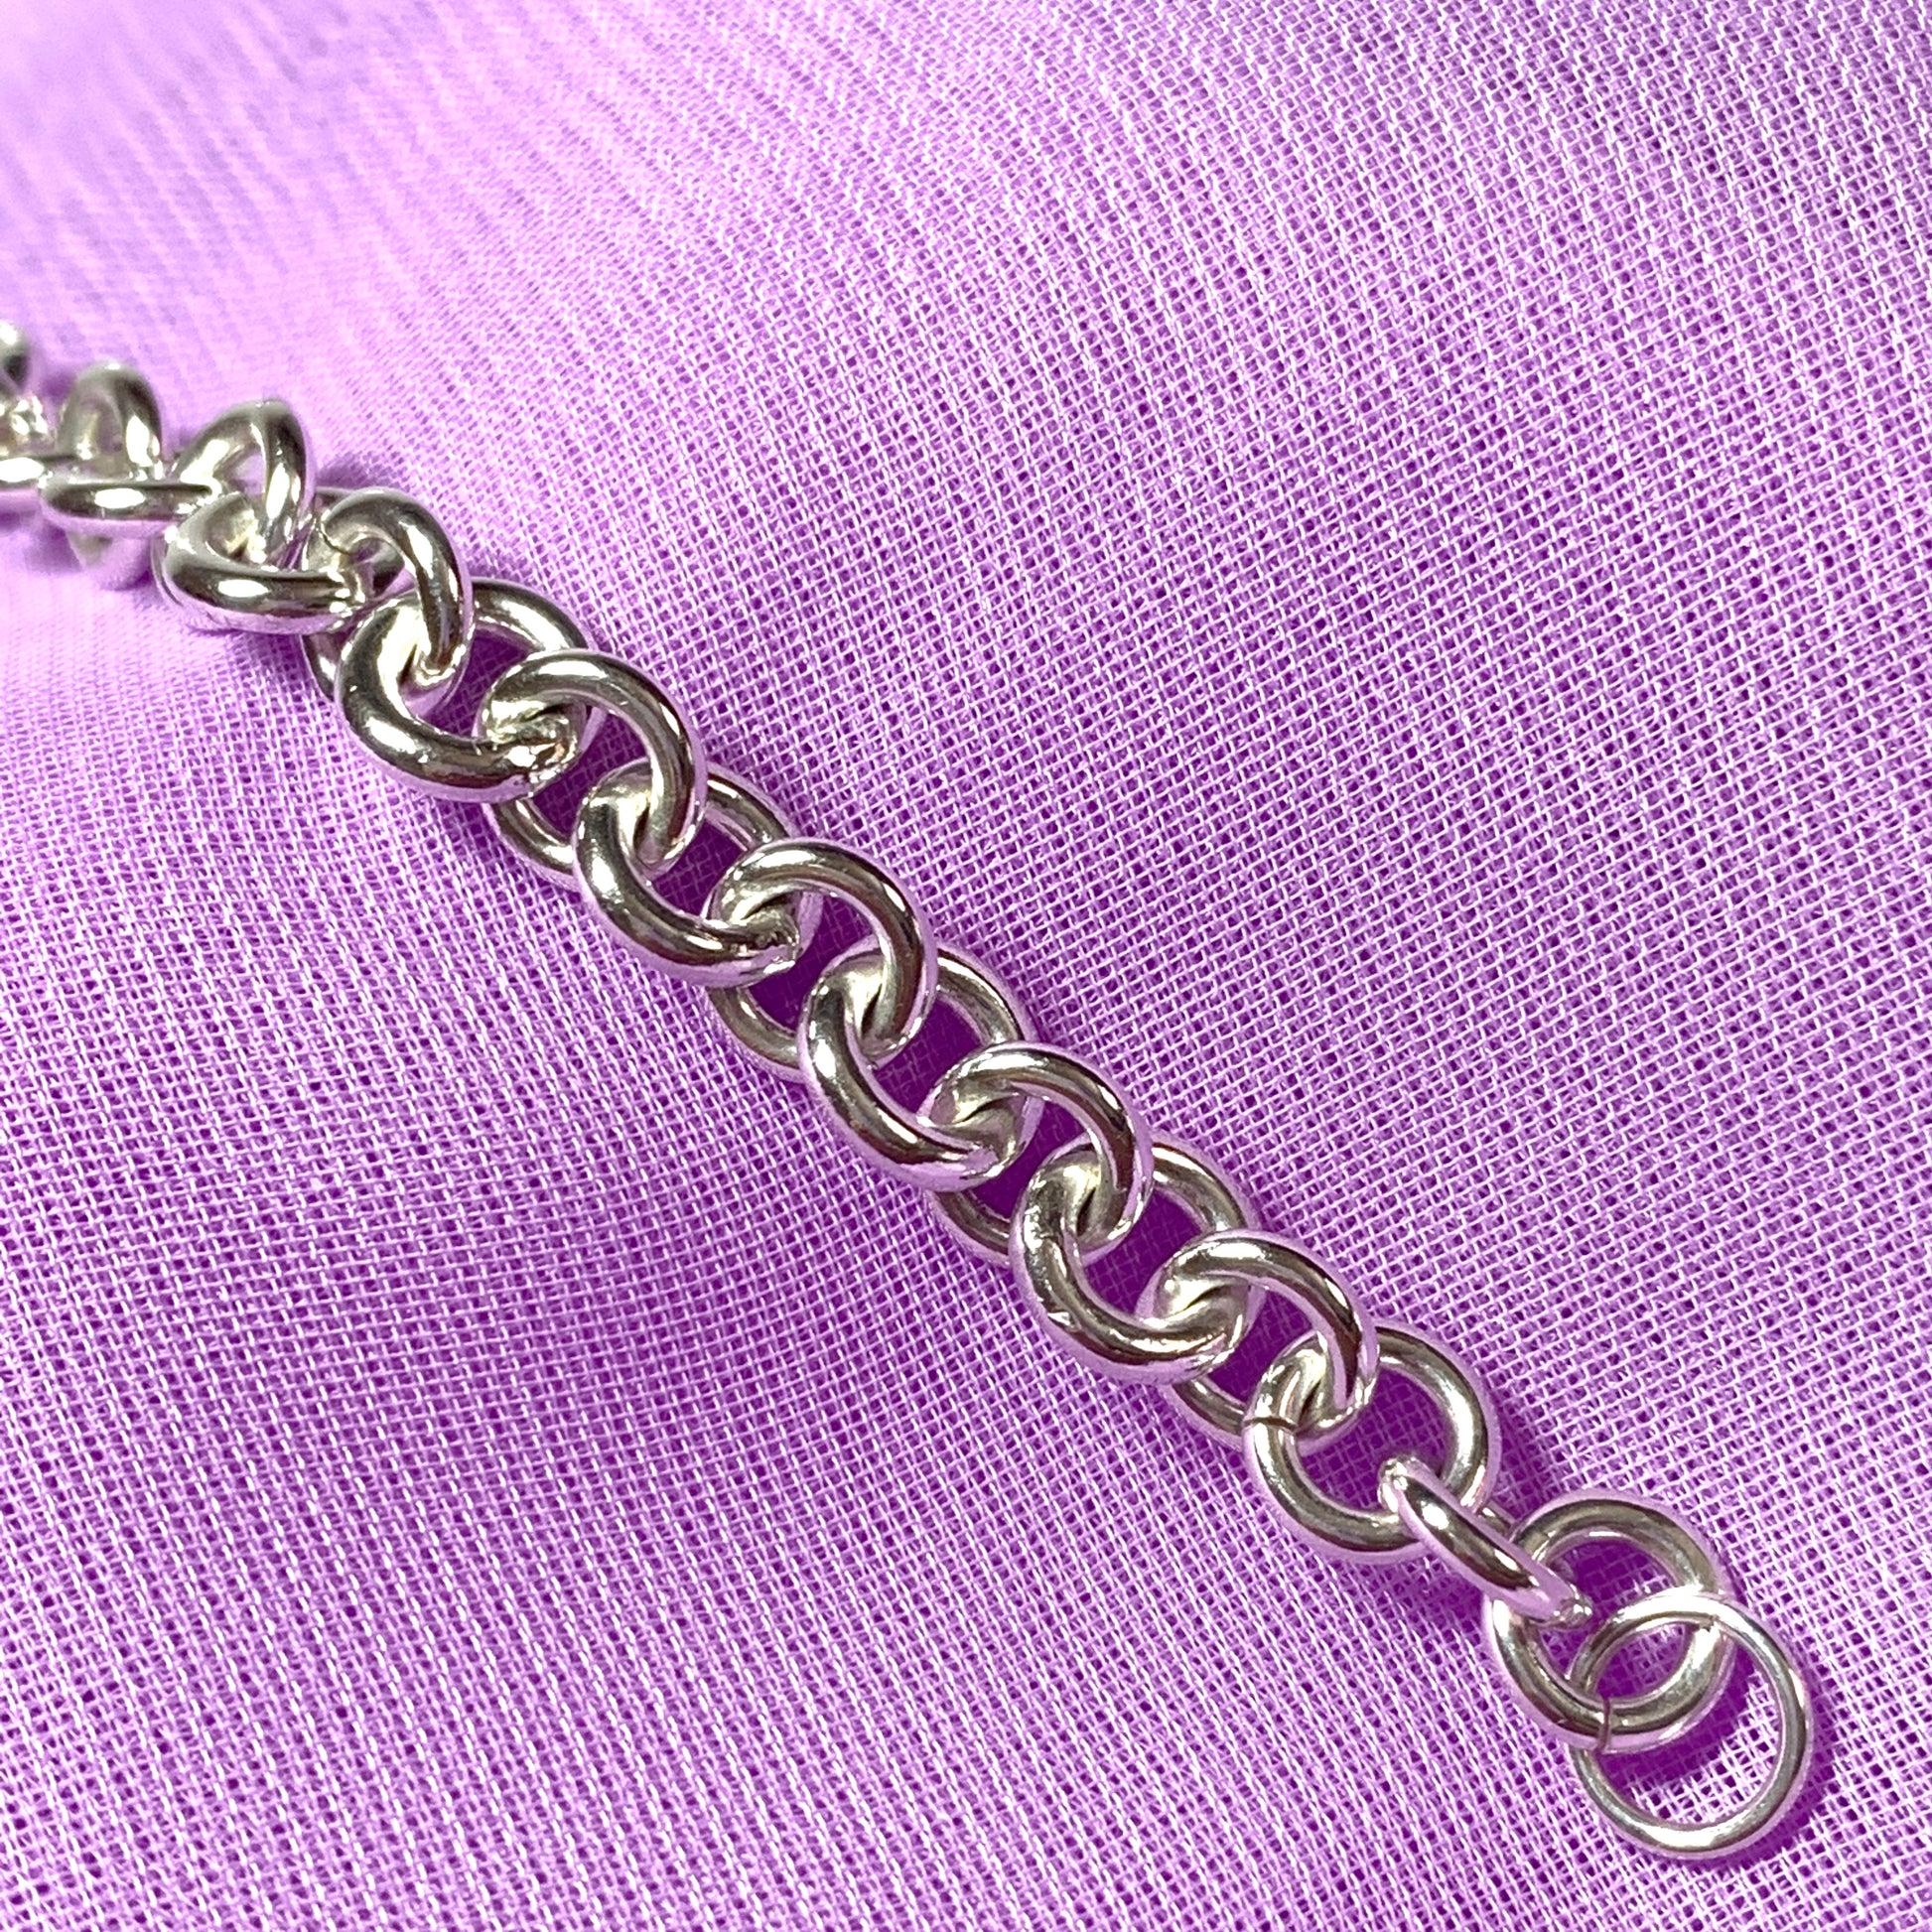 Sterling silver solid round link bracelet